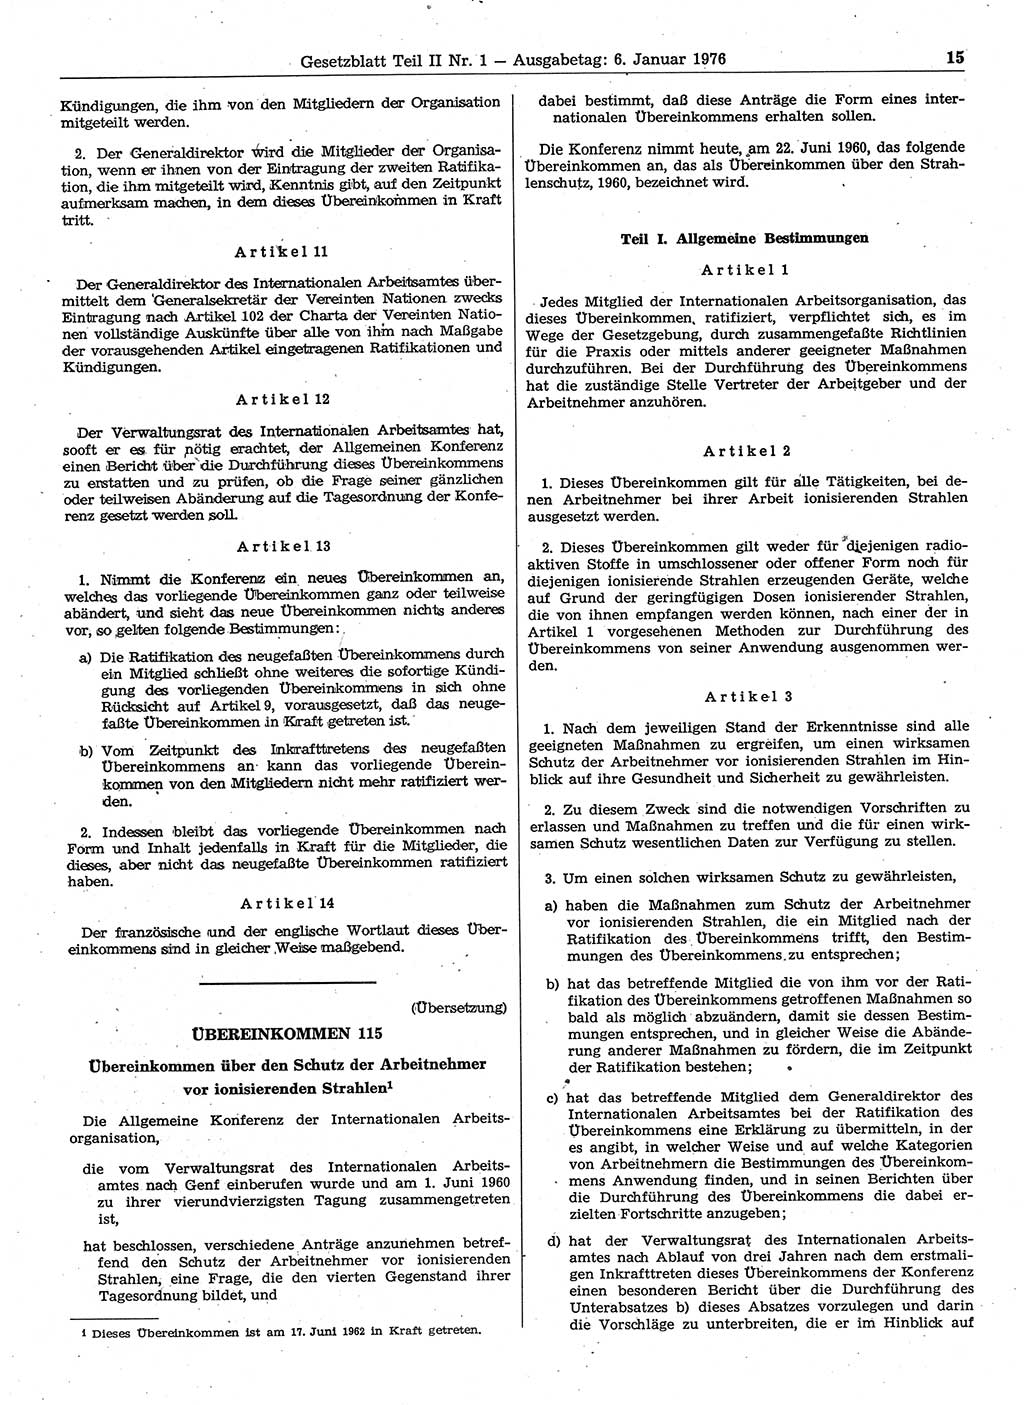 Gesetzblatt (GBl.) der Deutschen Demokratischen Republik (DDR) Teil ⅠⅠ 1976, Seite 15 (GBl. DDR ⅠⅠ 1976, S. 15)